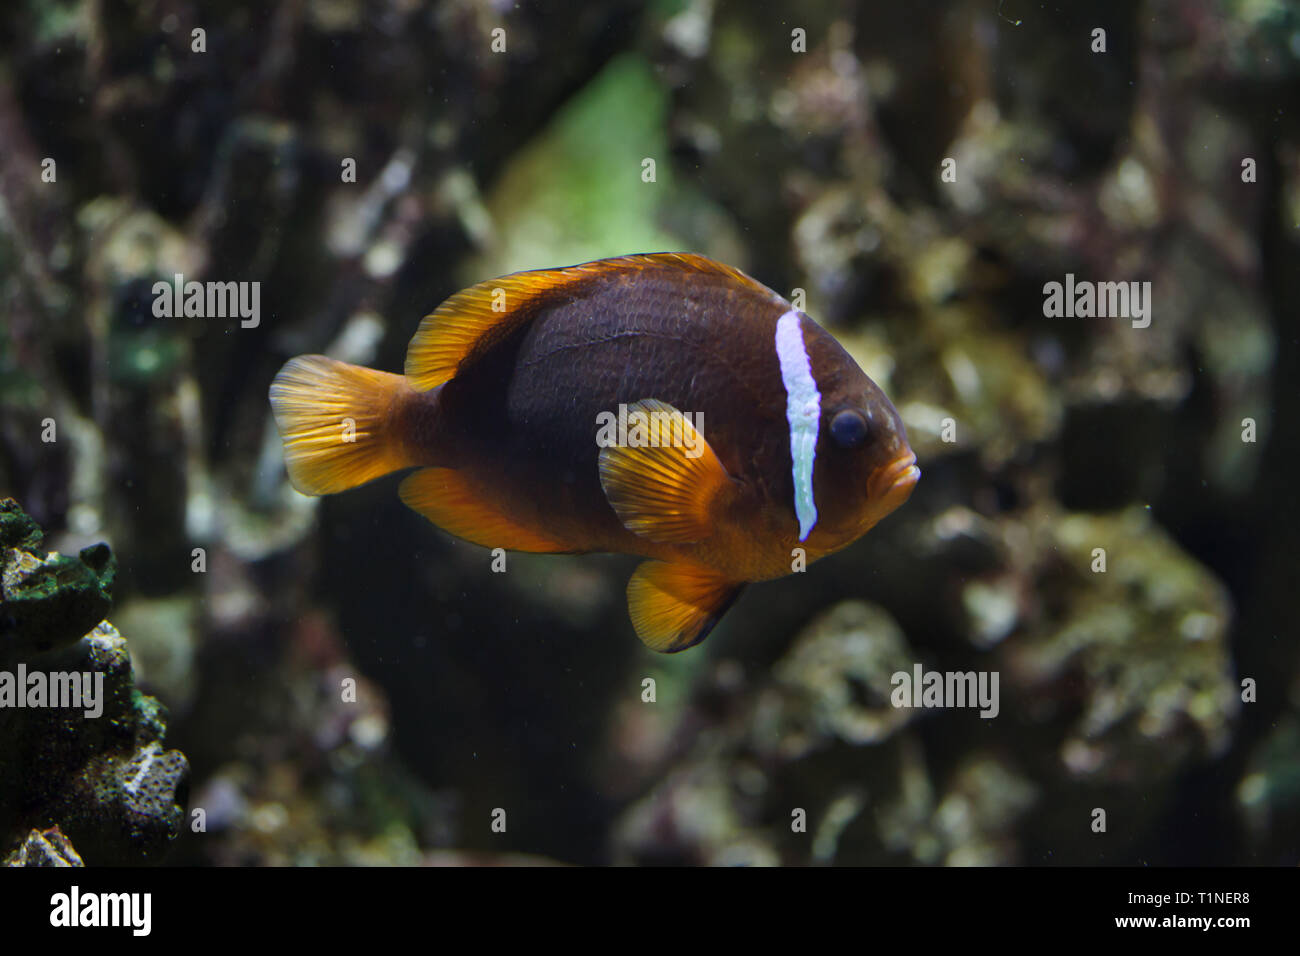 Clownfish Amphiprion frenatus (tomate), également connu sous le nom de blackback poisson clown. Banque D'Images